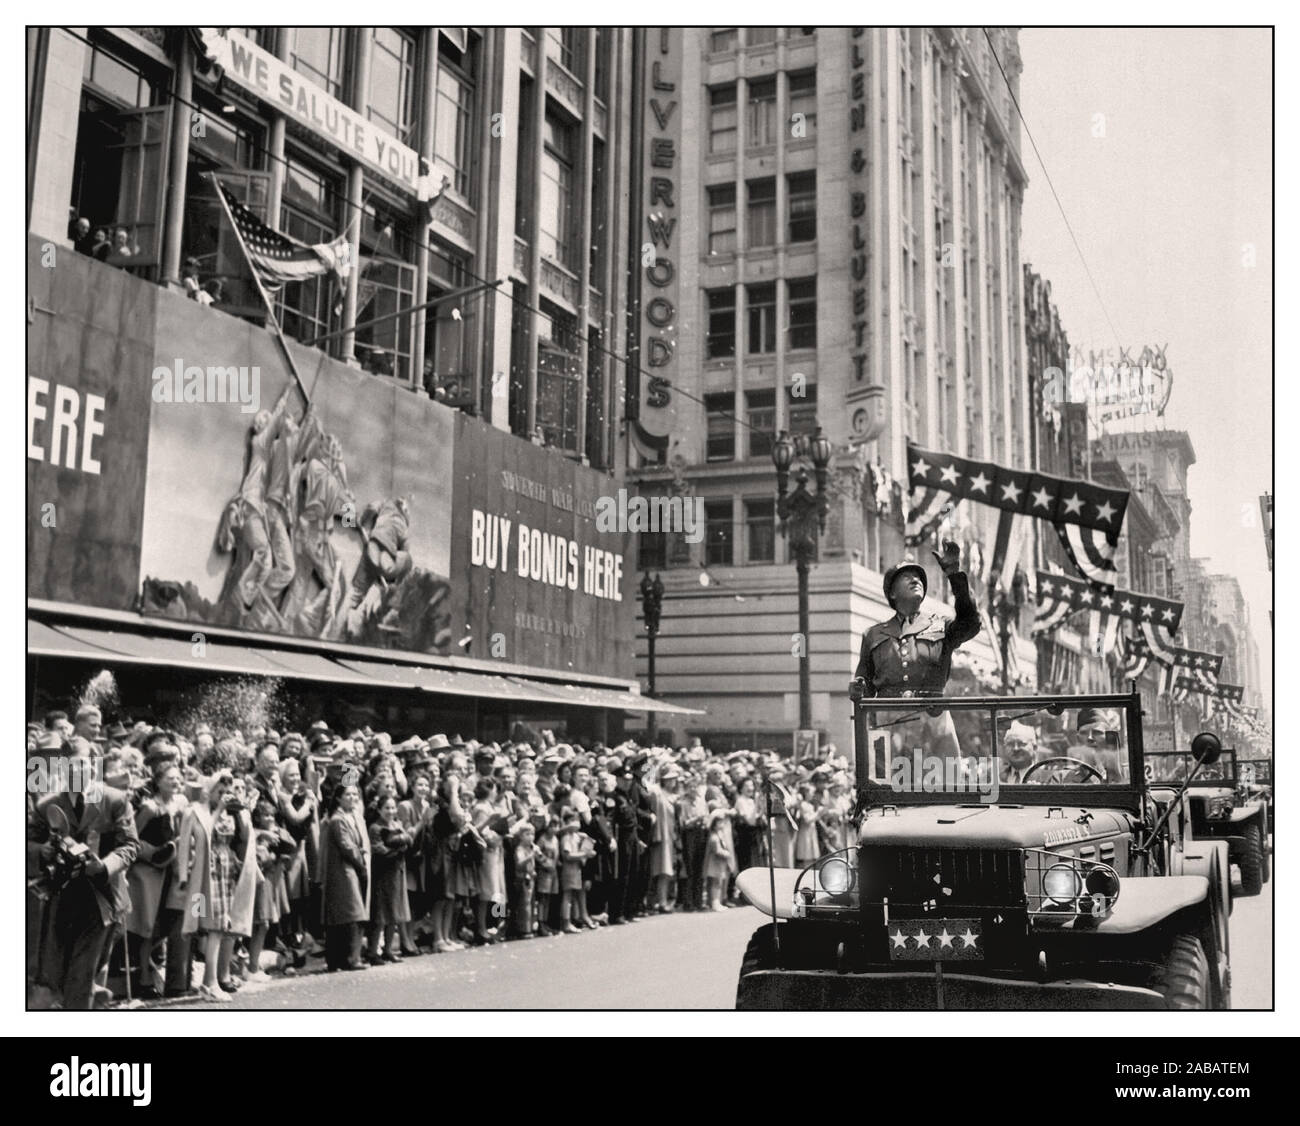 Célébration WW2 Allemagne renonce à la Guerre Après la Seconde Guerre mondiale, 1945 U.S. Army général George S. Patton reconnaît les applaudissements de la foule lors de l'accueil d'un défilé à Los Angeles le 9 juin 1945, dans ce document post WW2 Seconde Guerre mondiale photo Banque D'Images